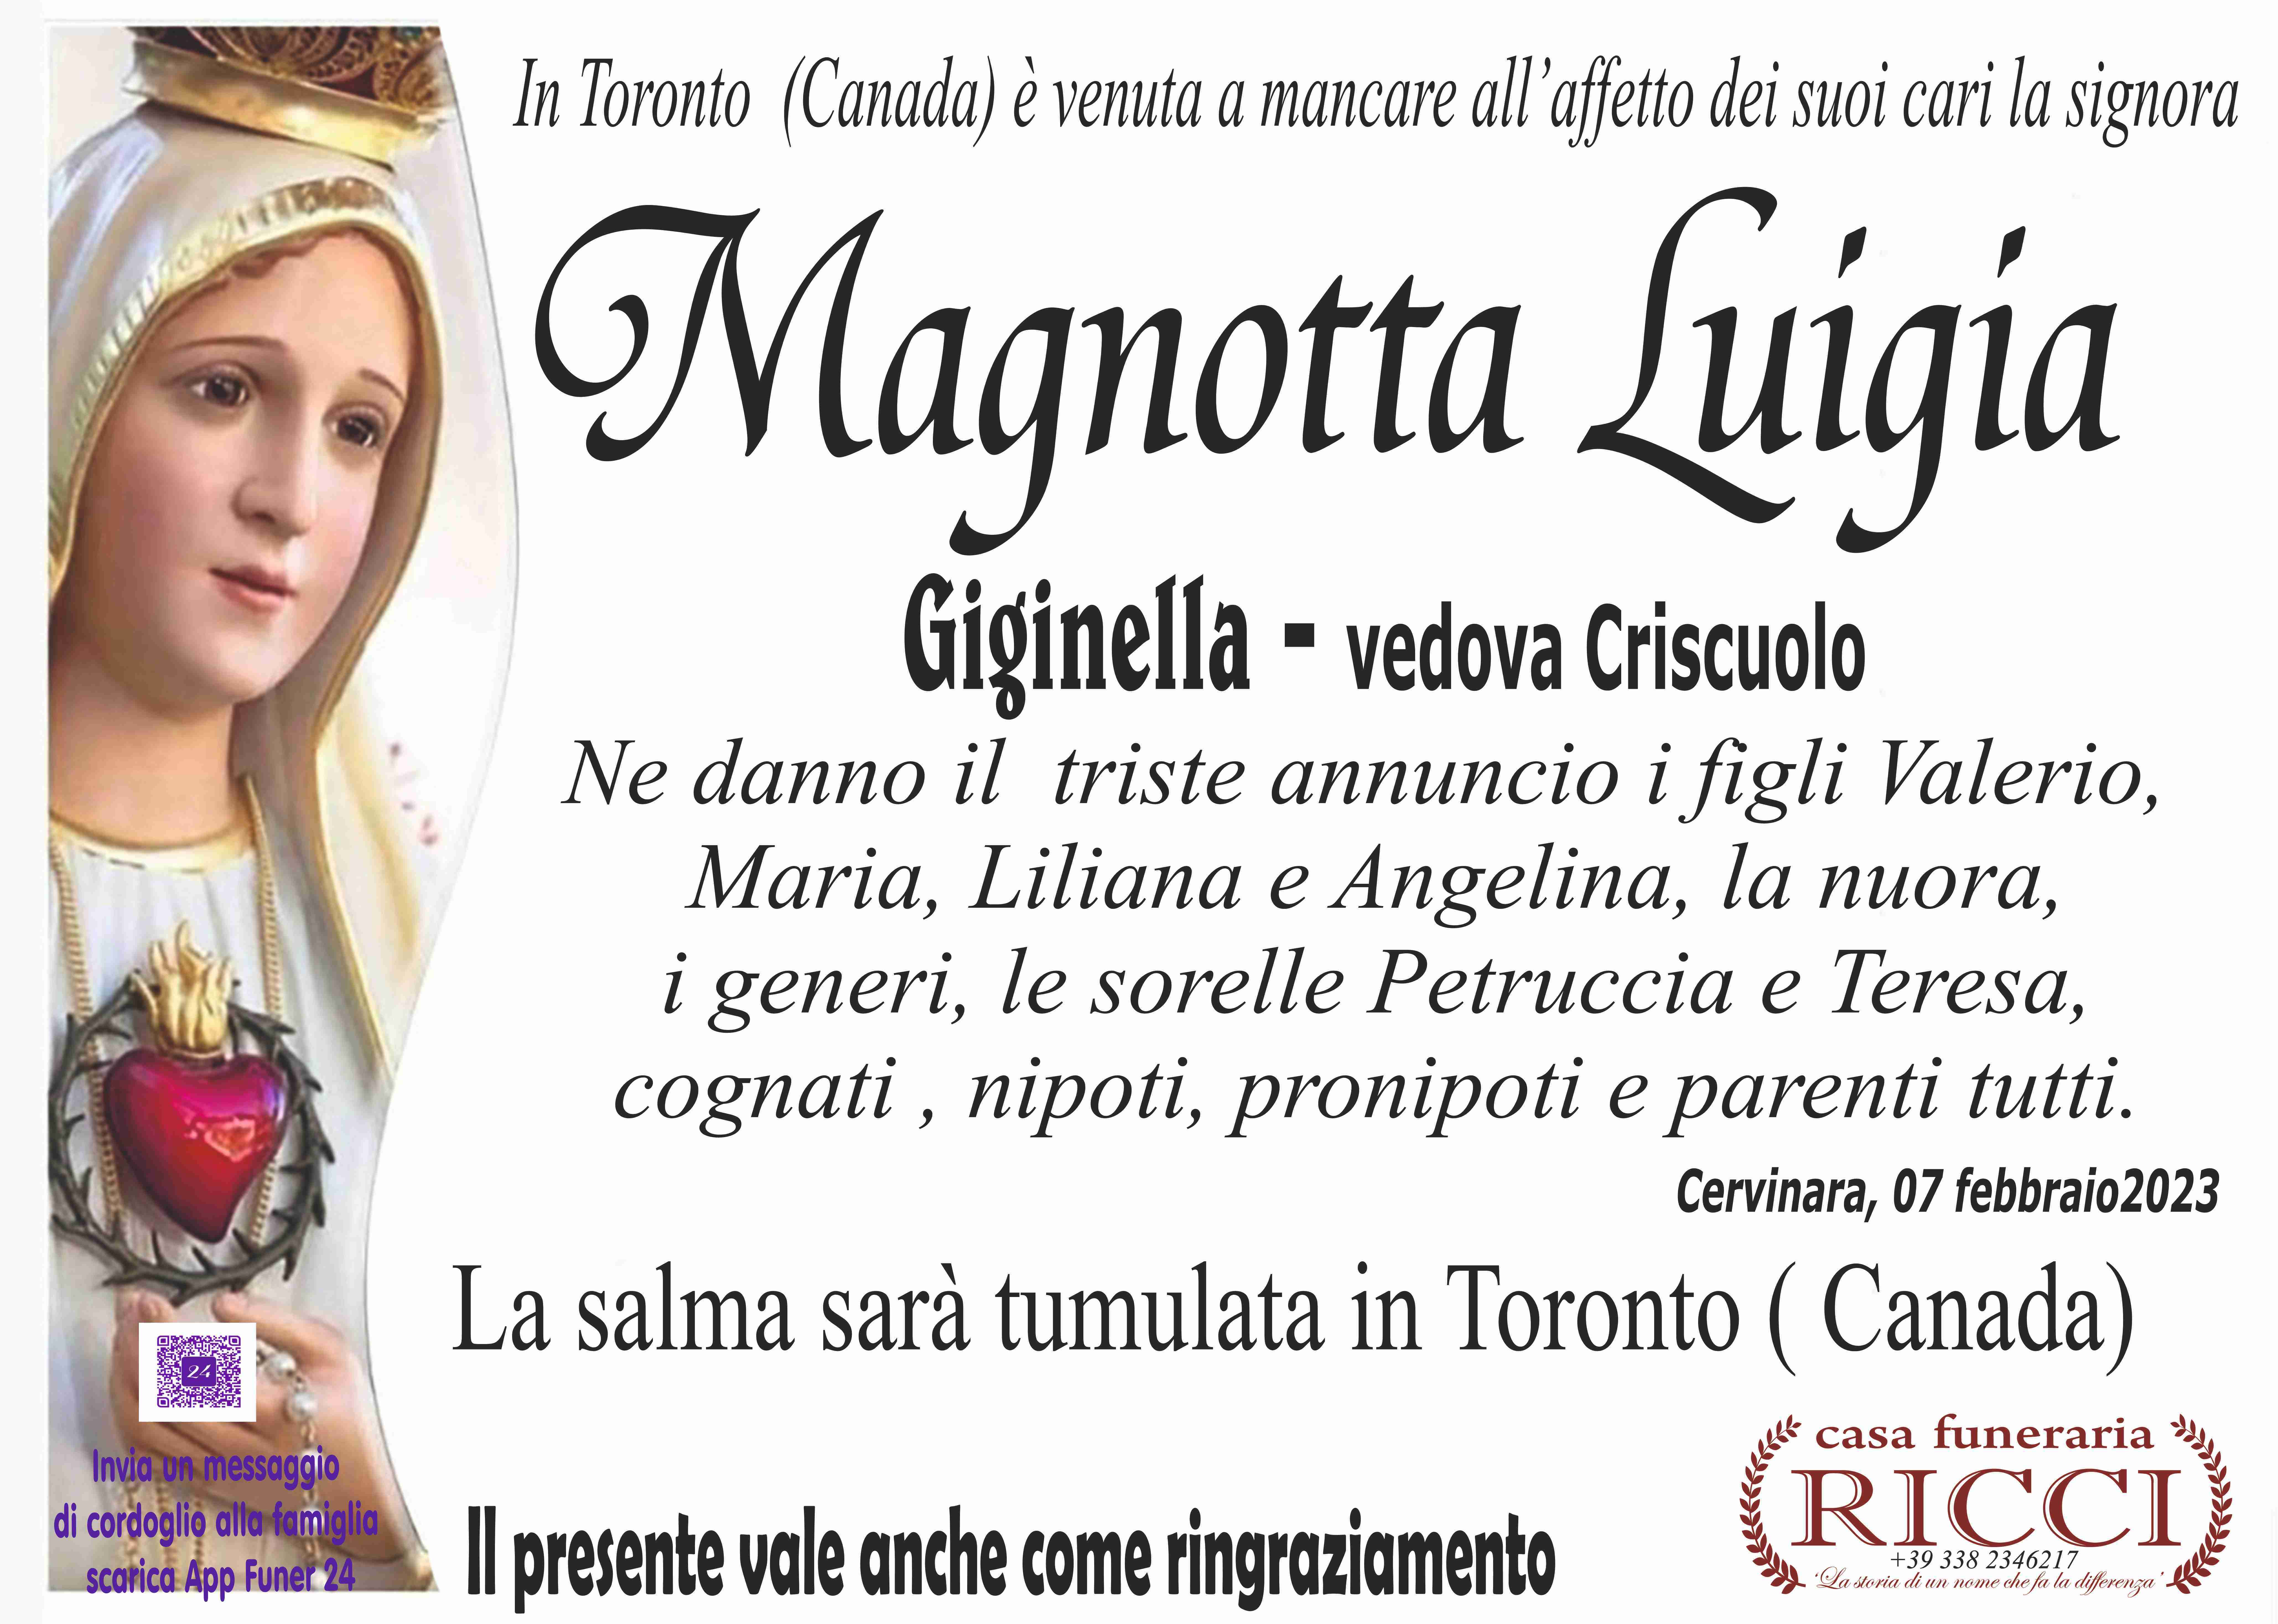 Luigia Magnotta